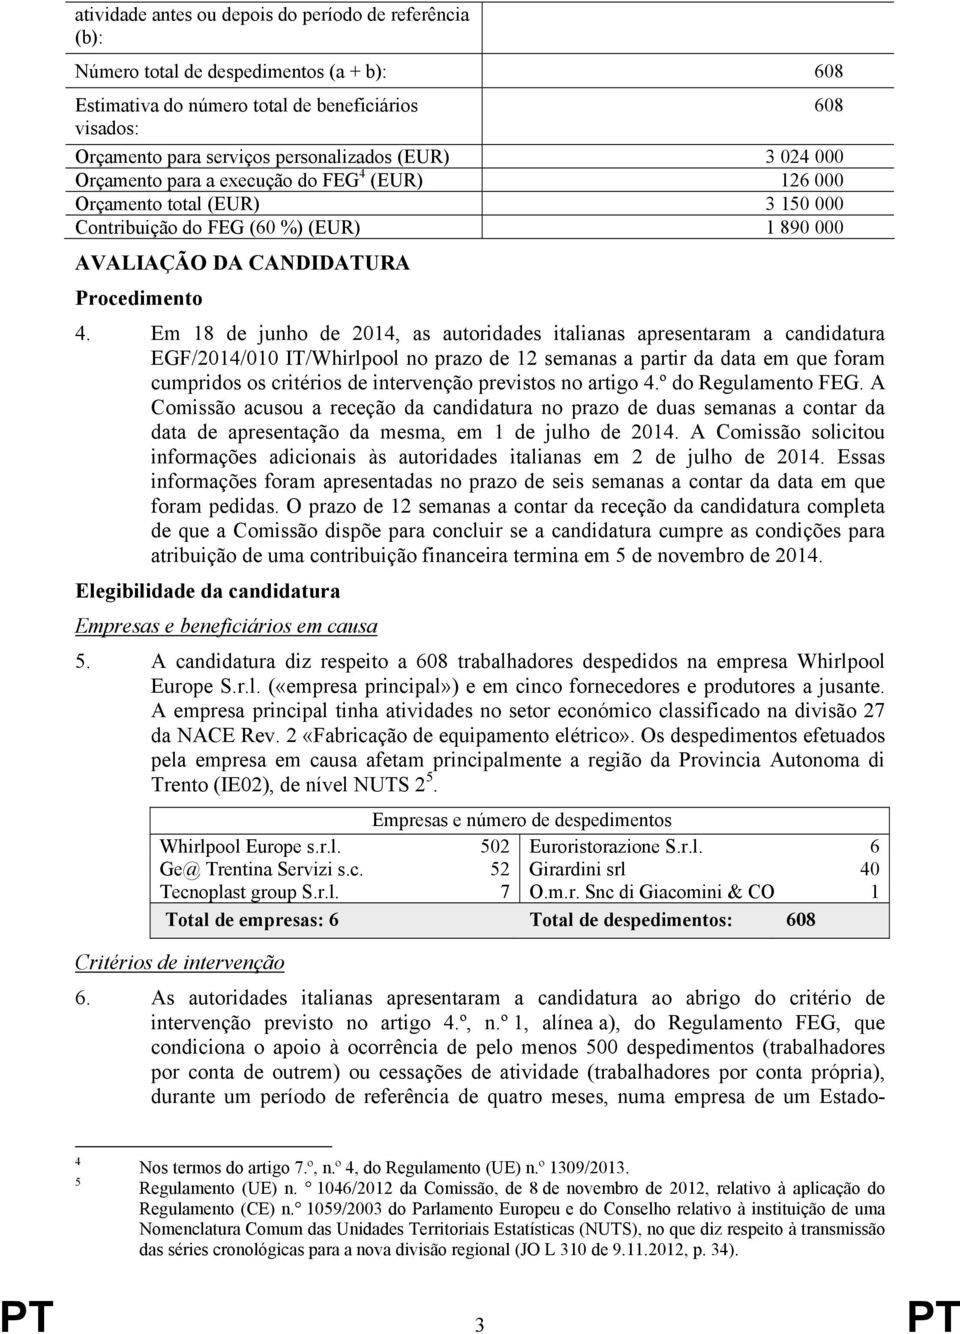 Em 18 de junho de 2014, as autoridades italianas apresentaram a candidatura EGF/2014/010 IT/Whirlpool no prazo de 12 semanas a partir da data em que foram cumpridos os critérios de intervenção